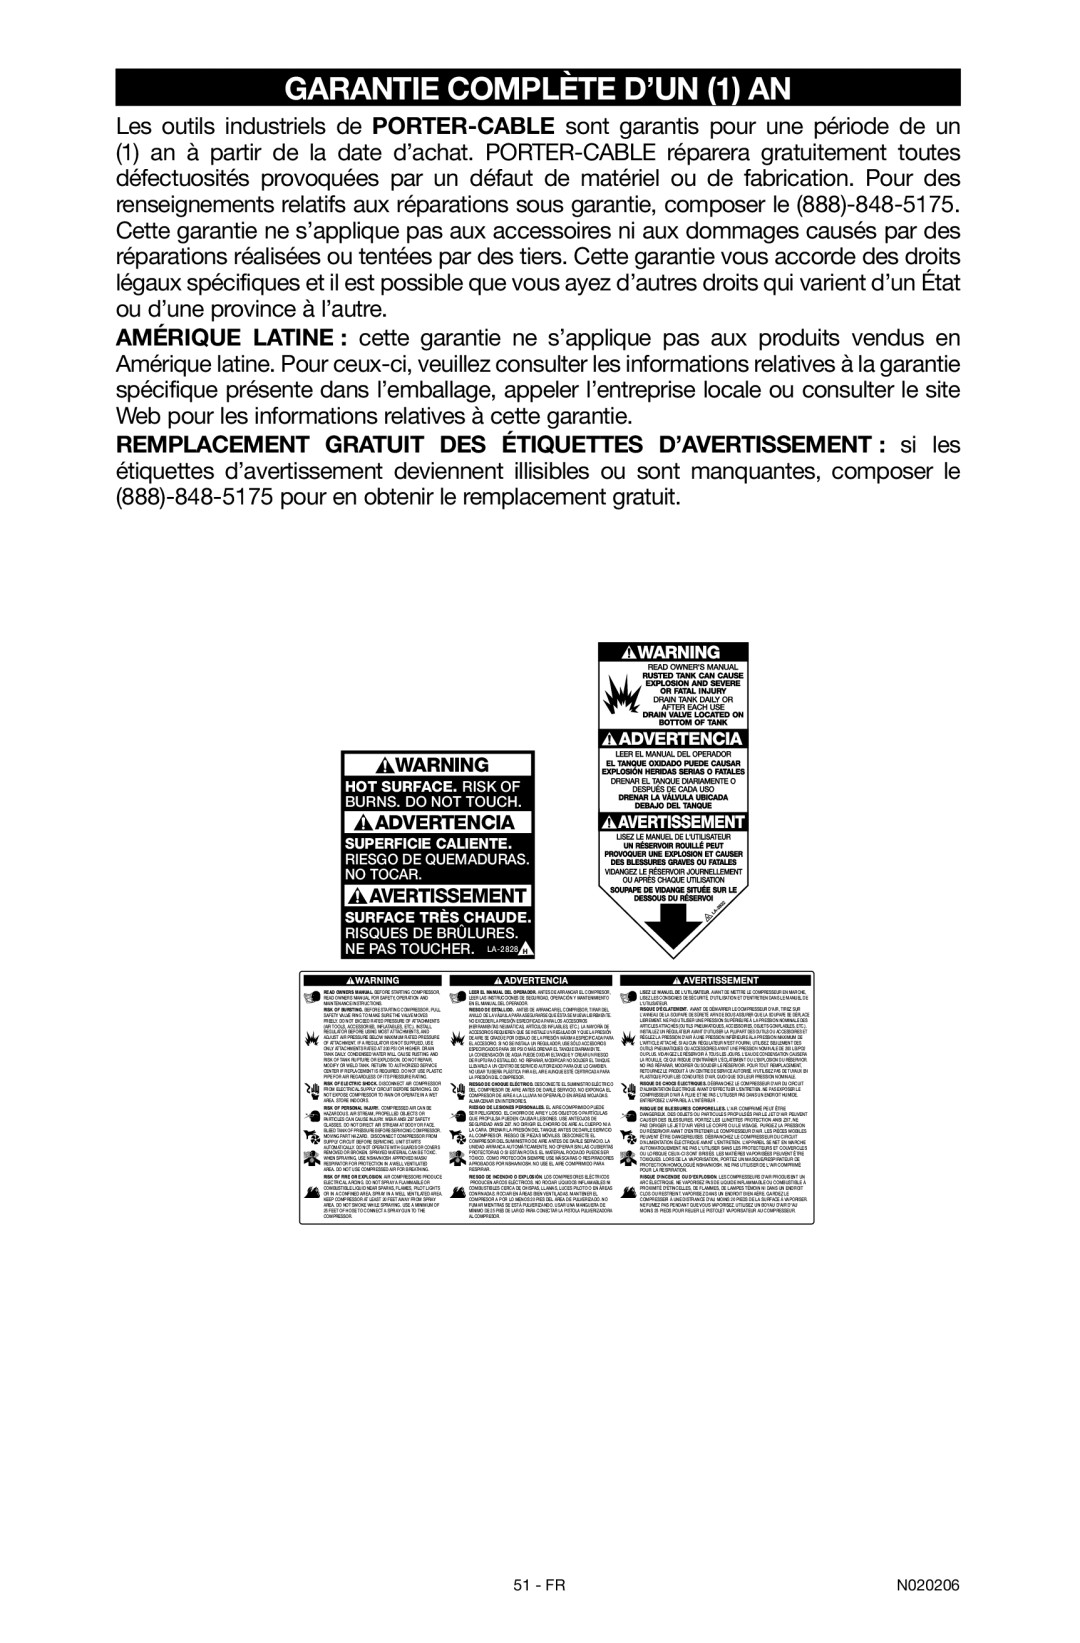 Porter-Cable C7501M, N020206-NOV08-0 instruction manual Garantie complète d’un 1 an 